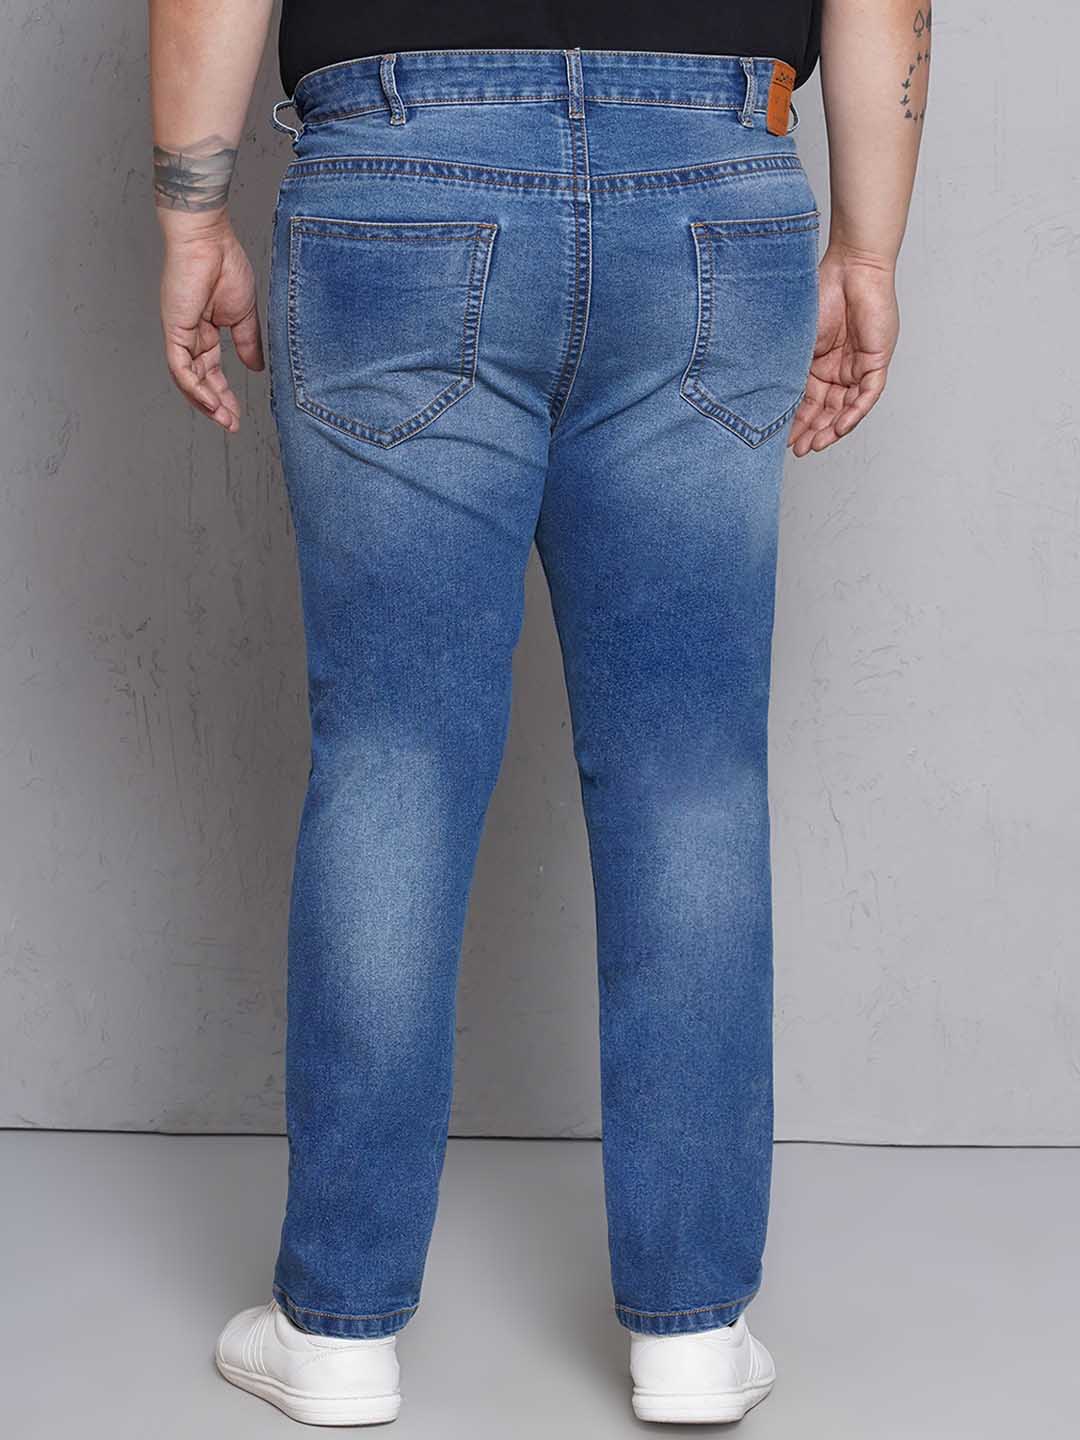 bottomwear/jeans/EJPJ25149/ejpj25149-4.jpg